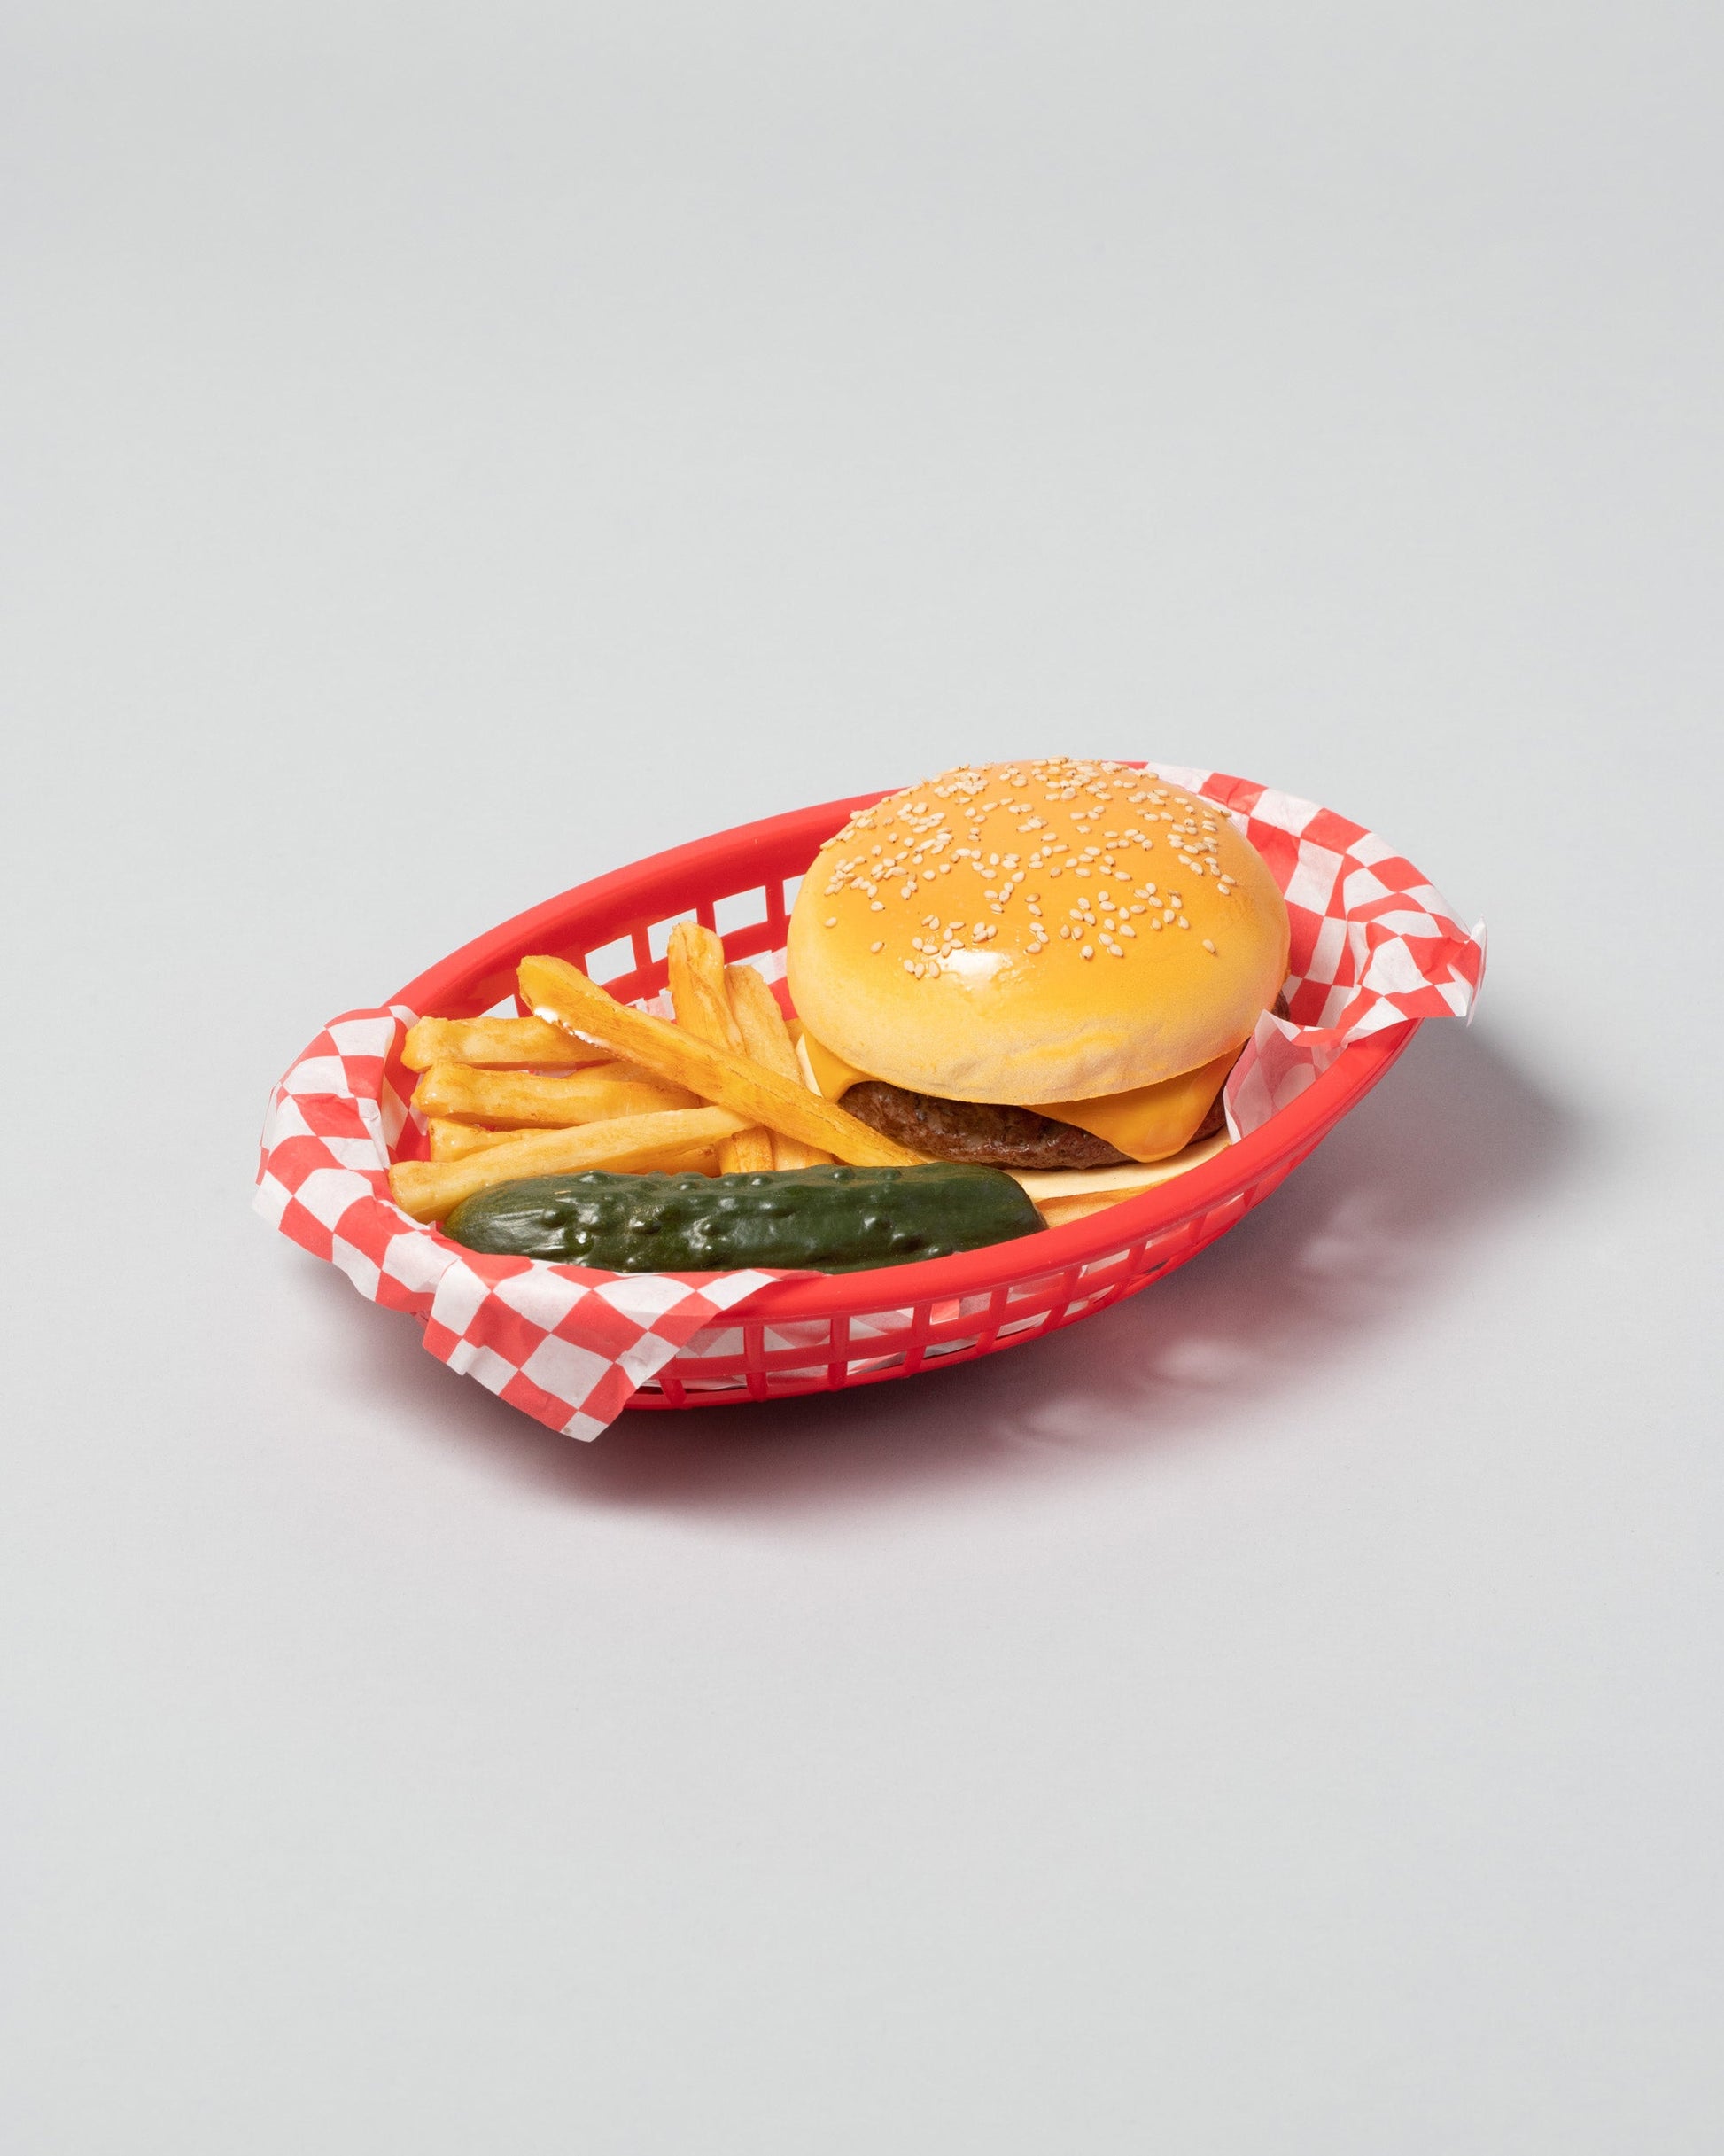 Spills Cheeseburger Basket on light color background.